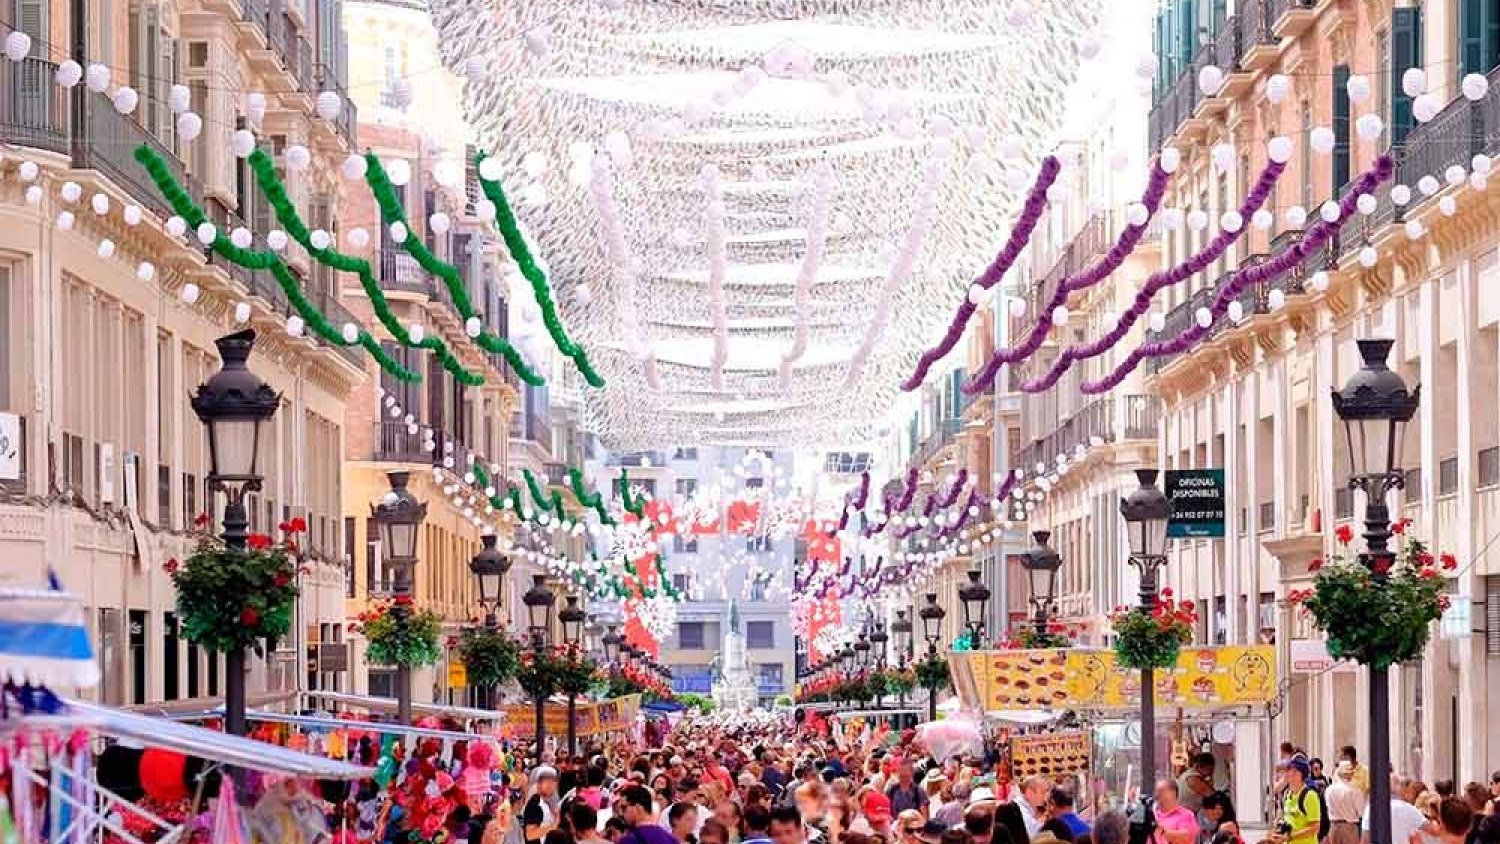 El alcalde de Málaga pospone la decisión final sobre la celebración o no de la Feria de Málaga